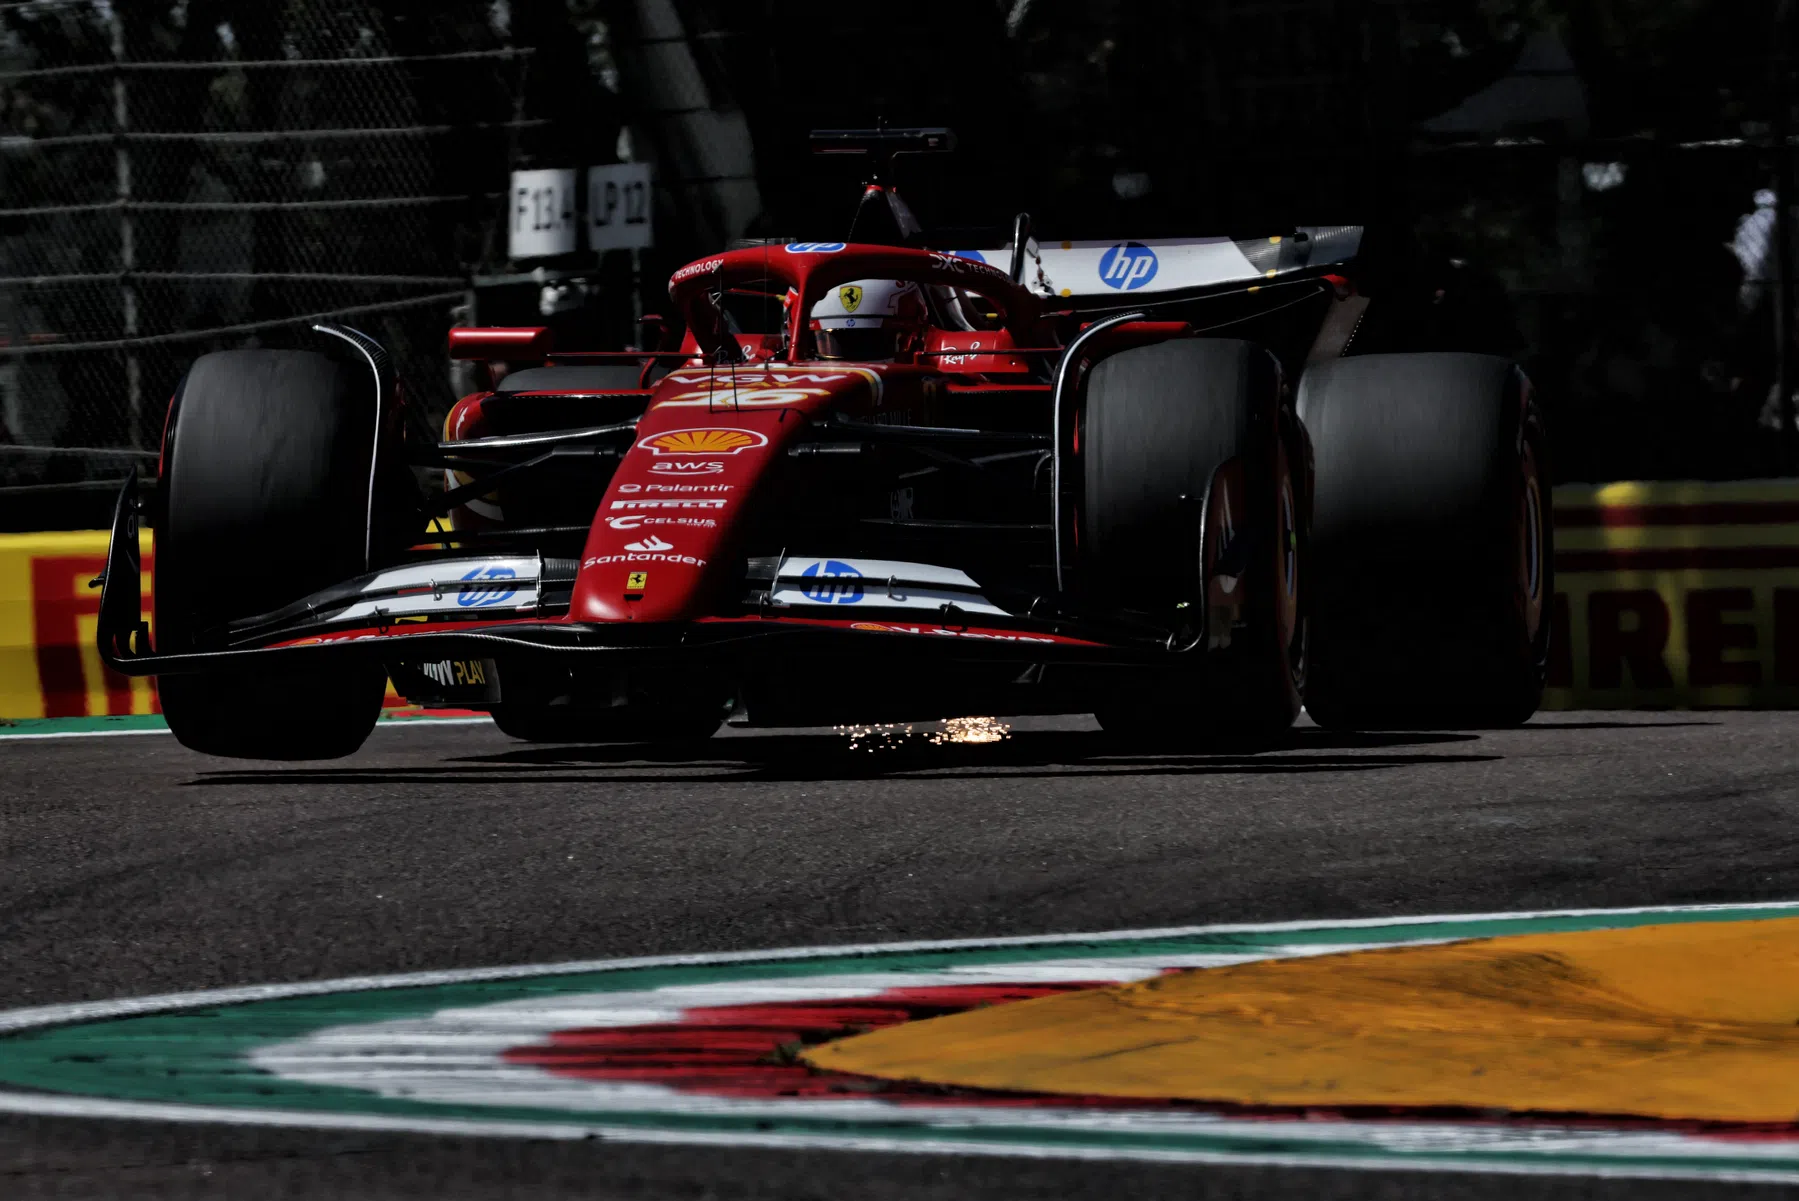 Problemas para Verstappen en la FP1 y Leclerc termina más rápido